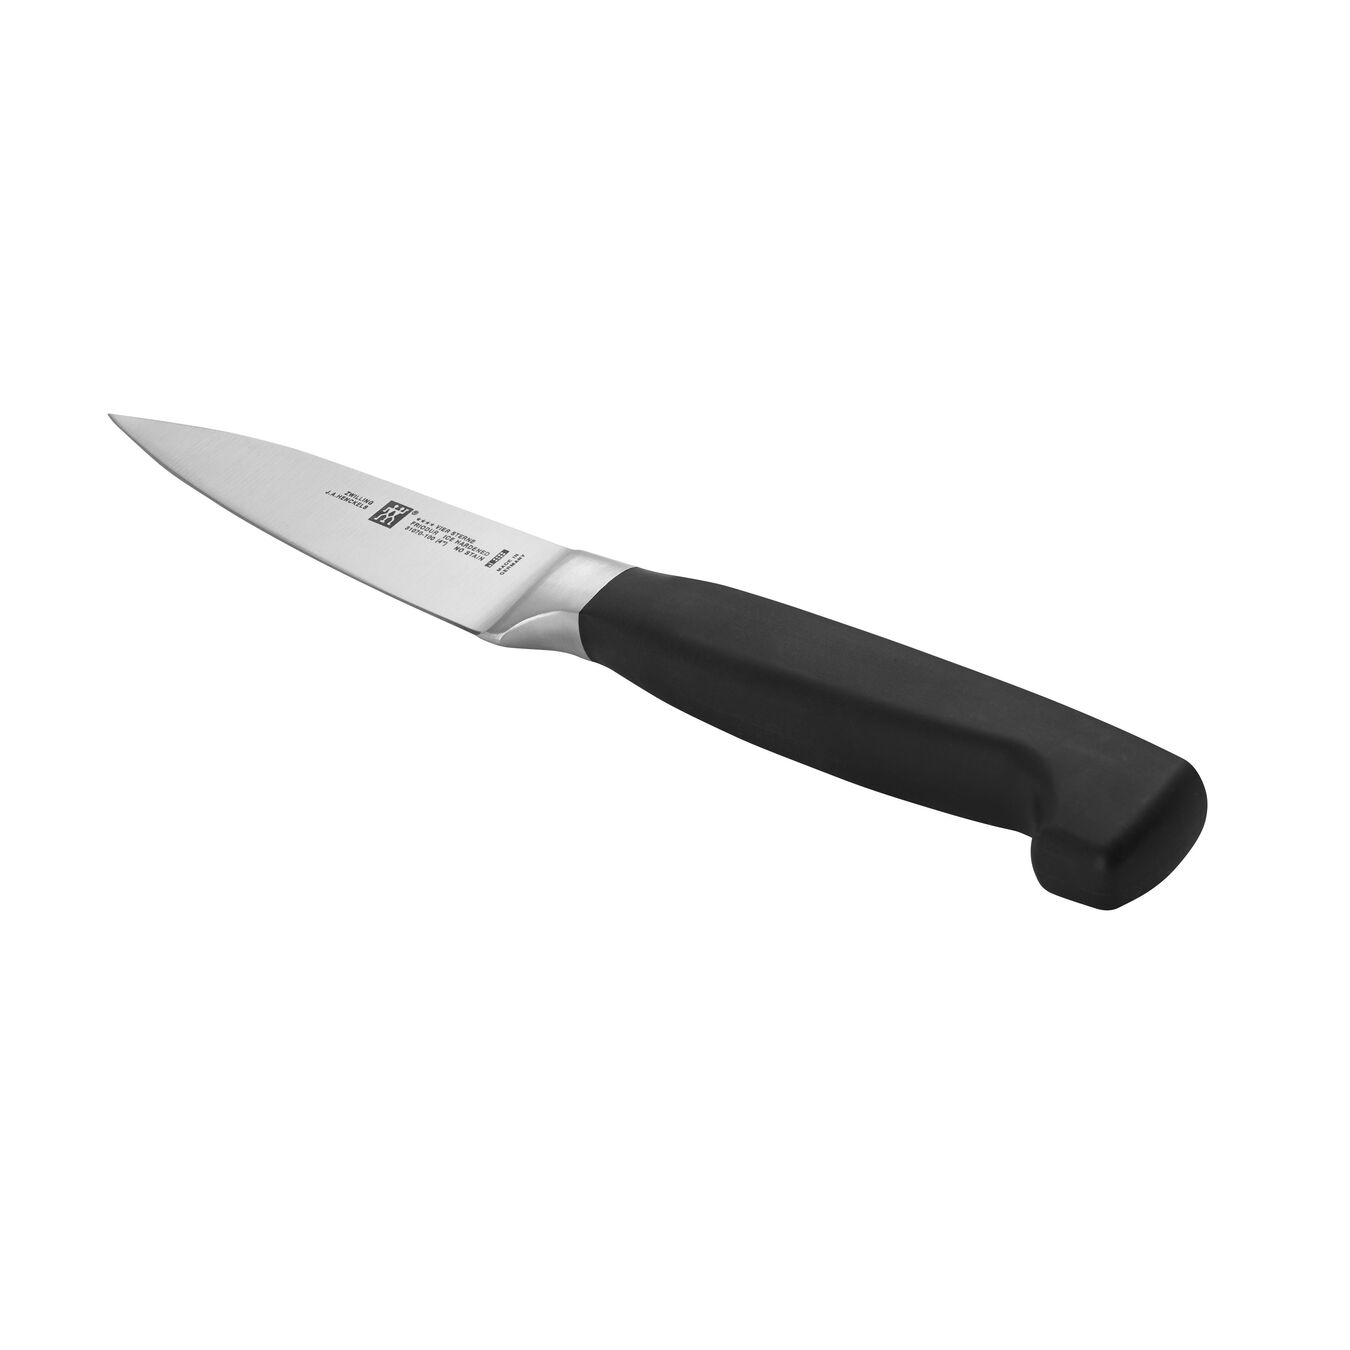 Soyma Doğrama Bıçağı | Özel Formül Çelik | 10 cm,,large 3